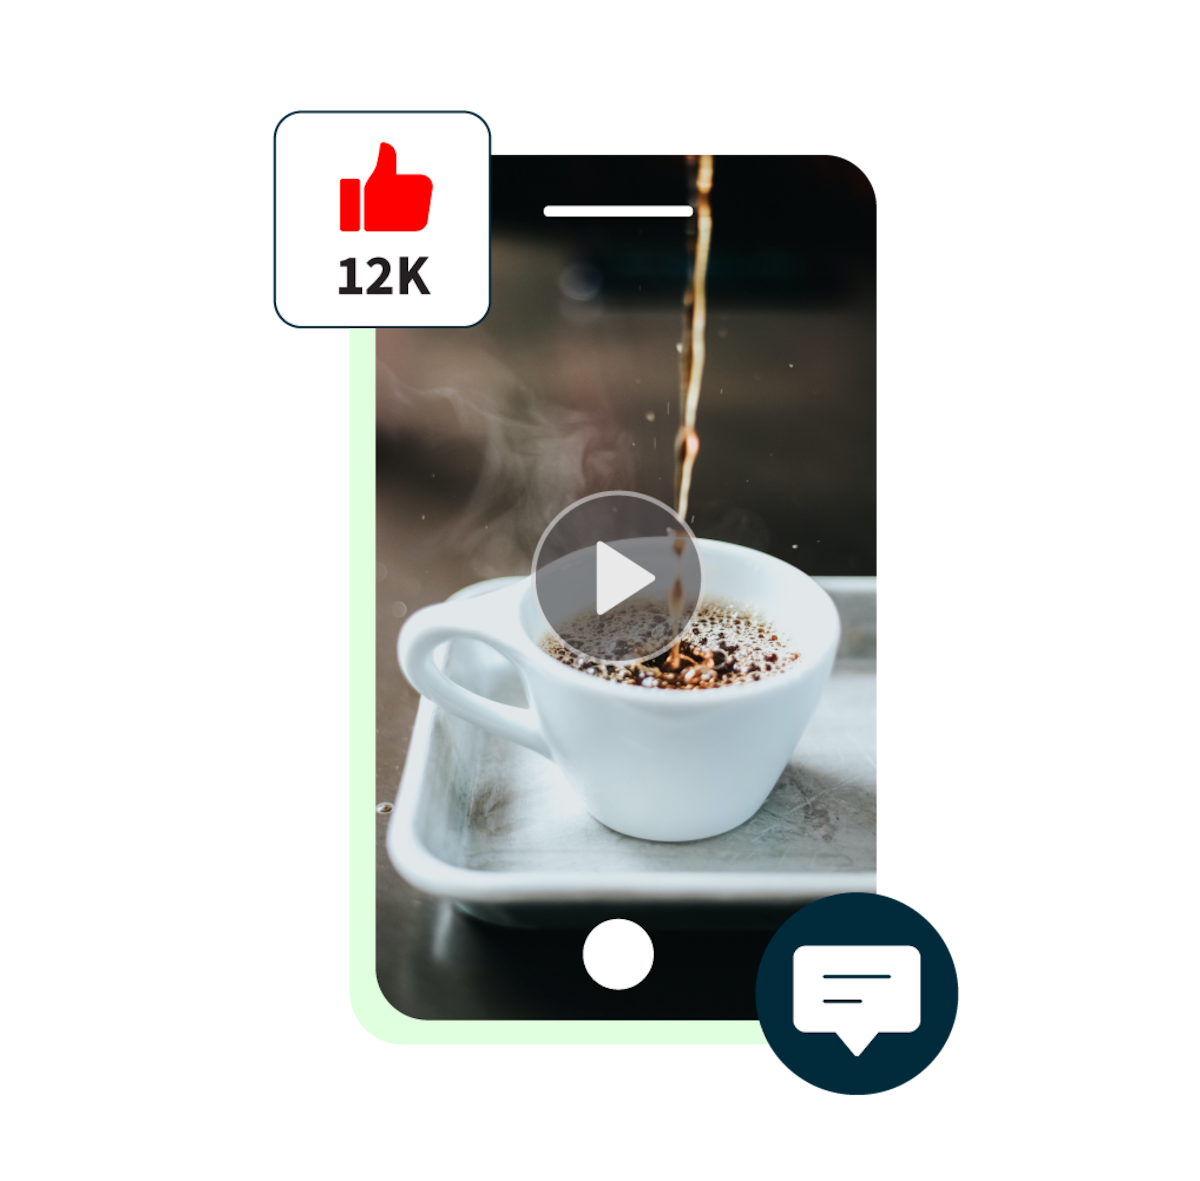 anteprima del video youtube shorts di un espresso che viene versato, insieme a un pop-up di 12.000 like